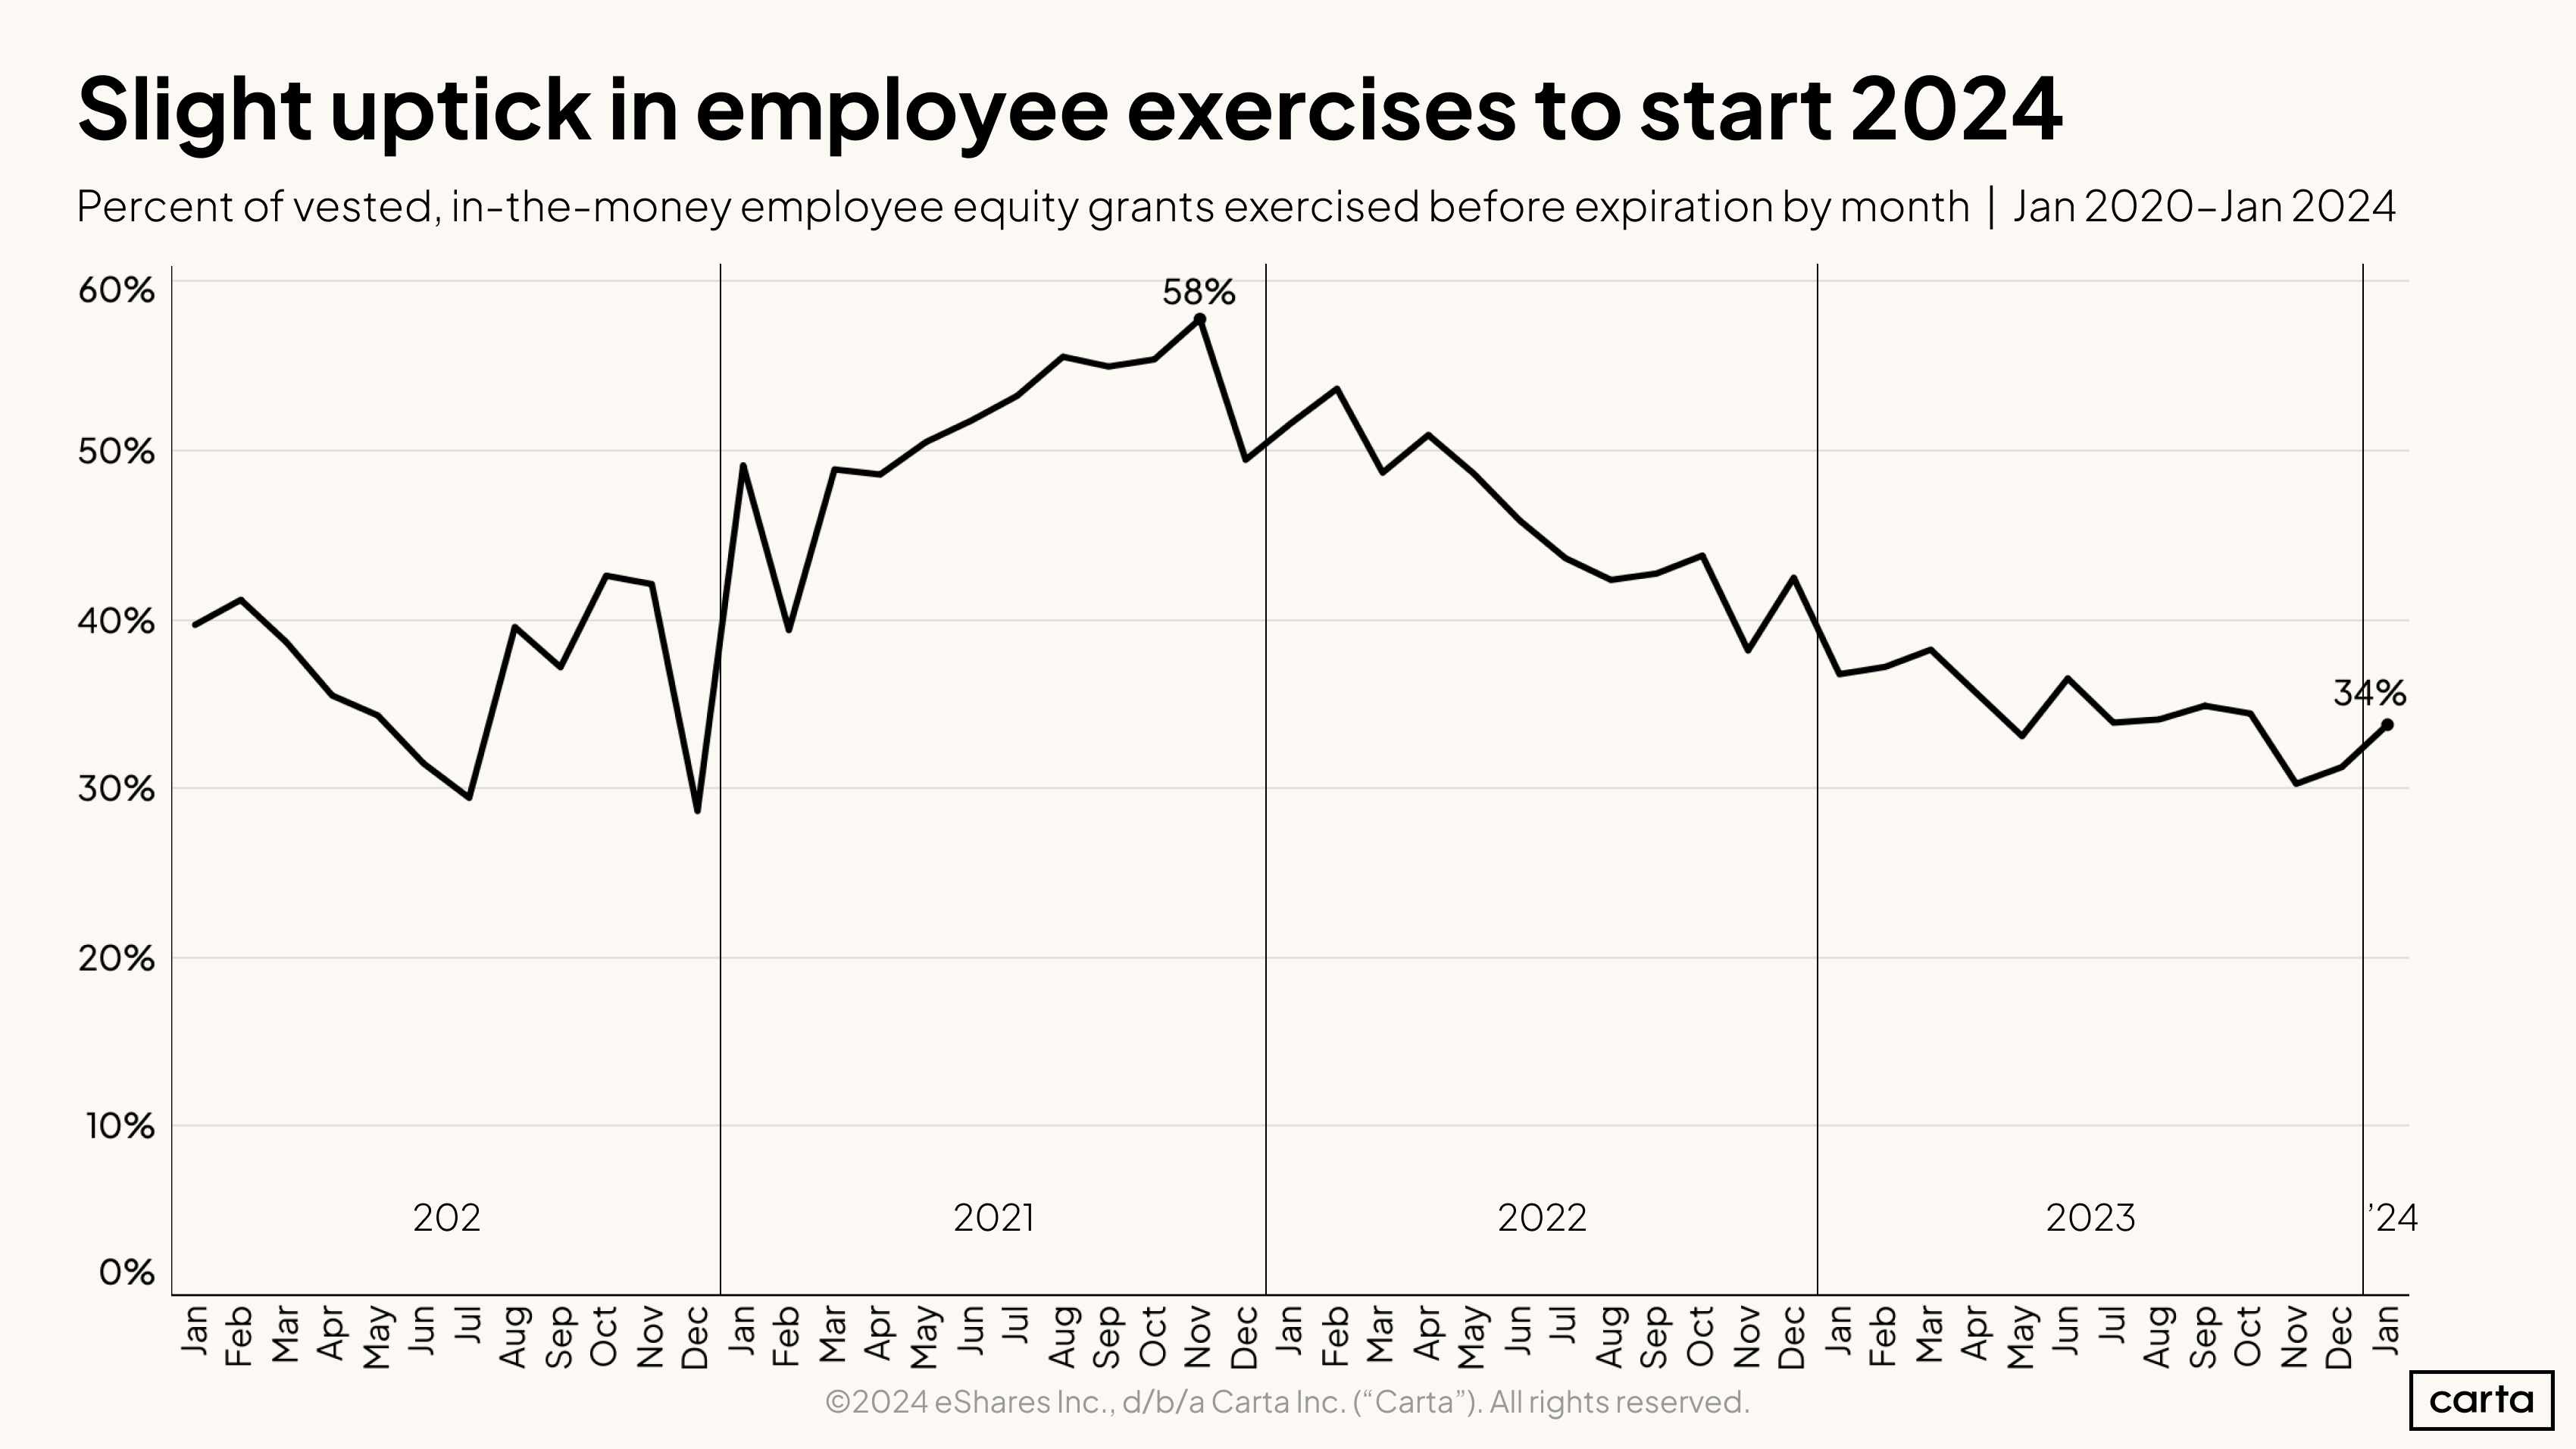 Slight uptick in employee exercises to start 2024